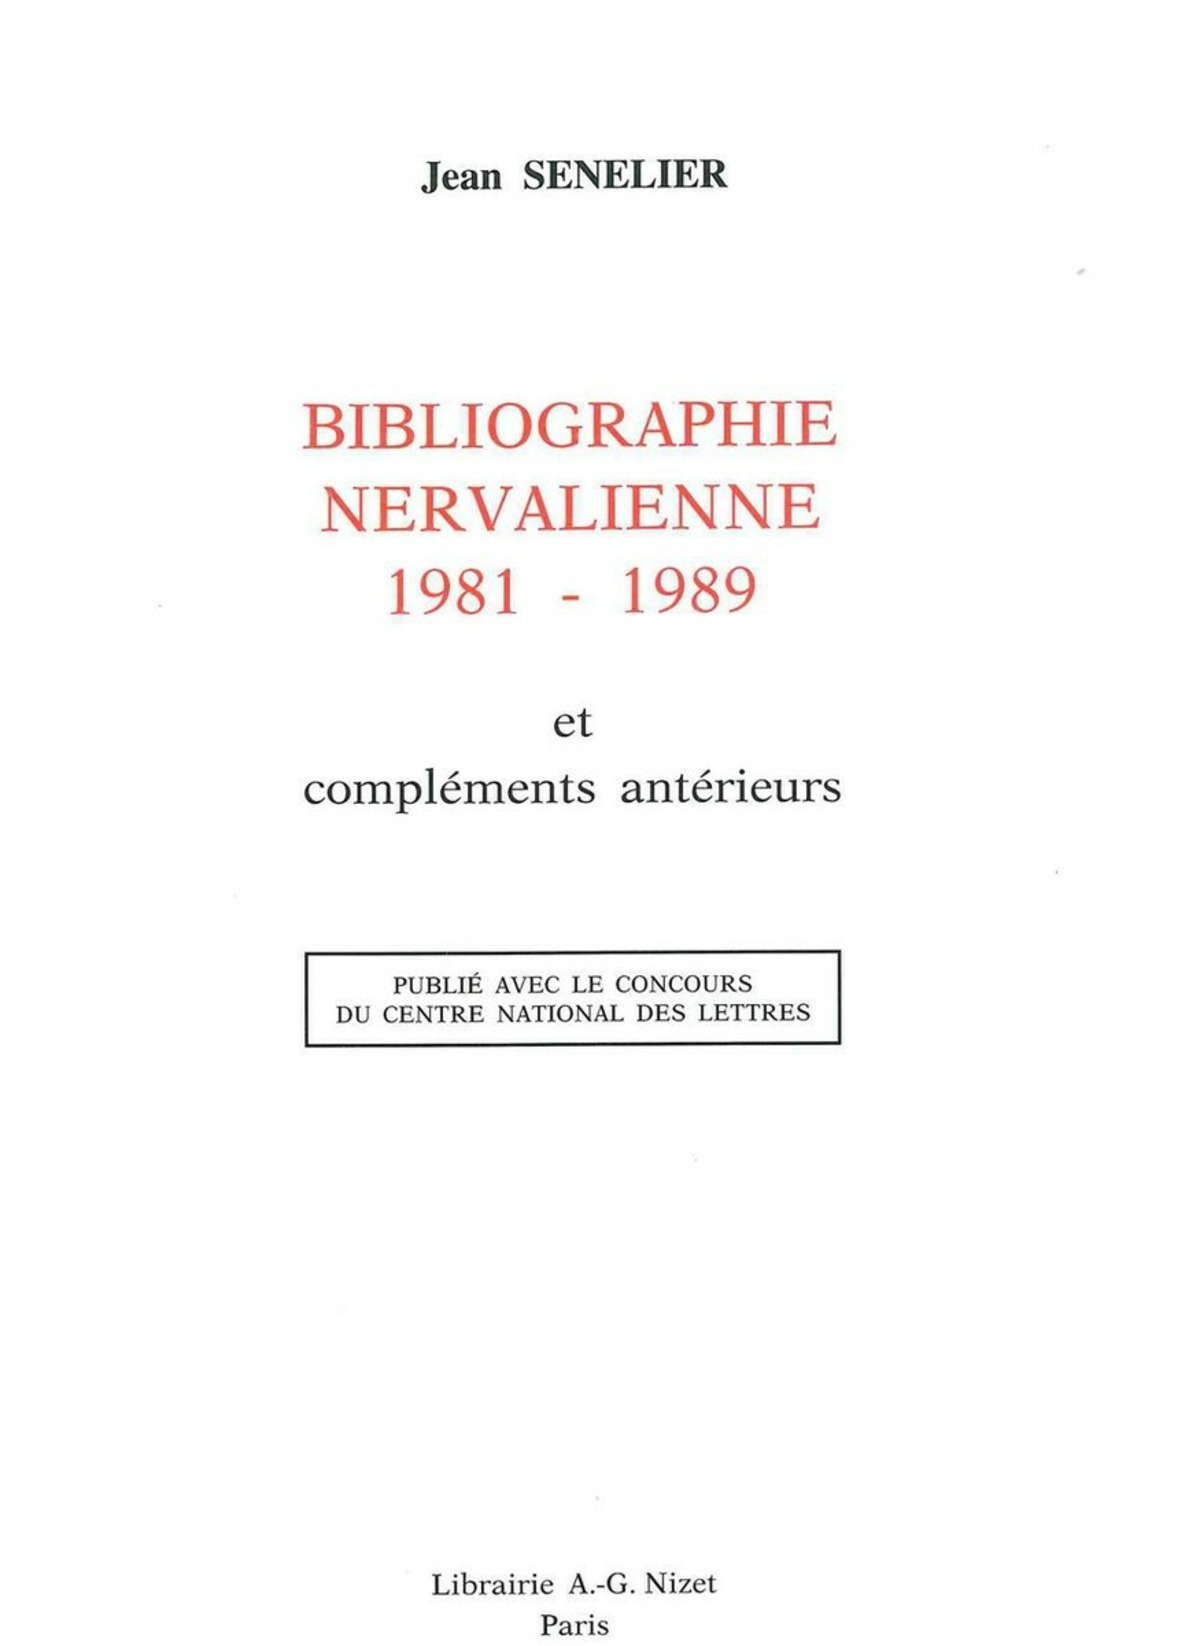 Bibliographie nervalienne 1981-1989